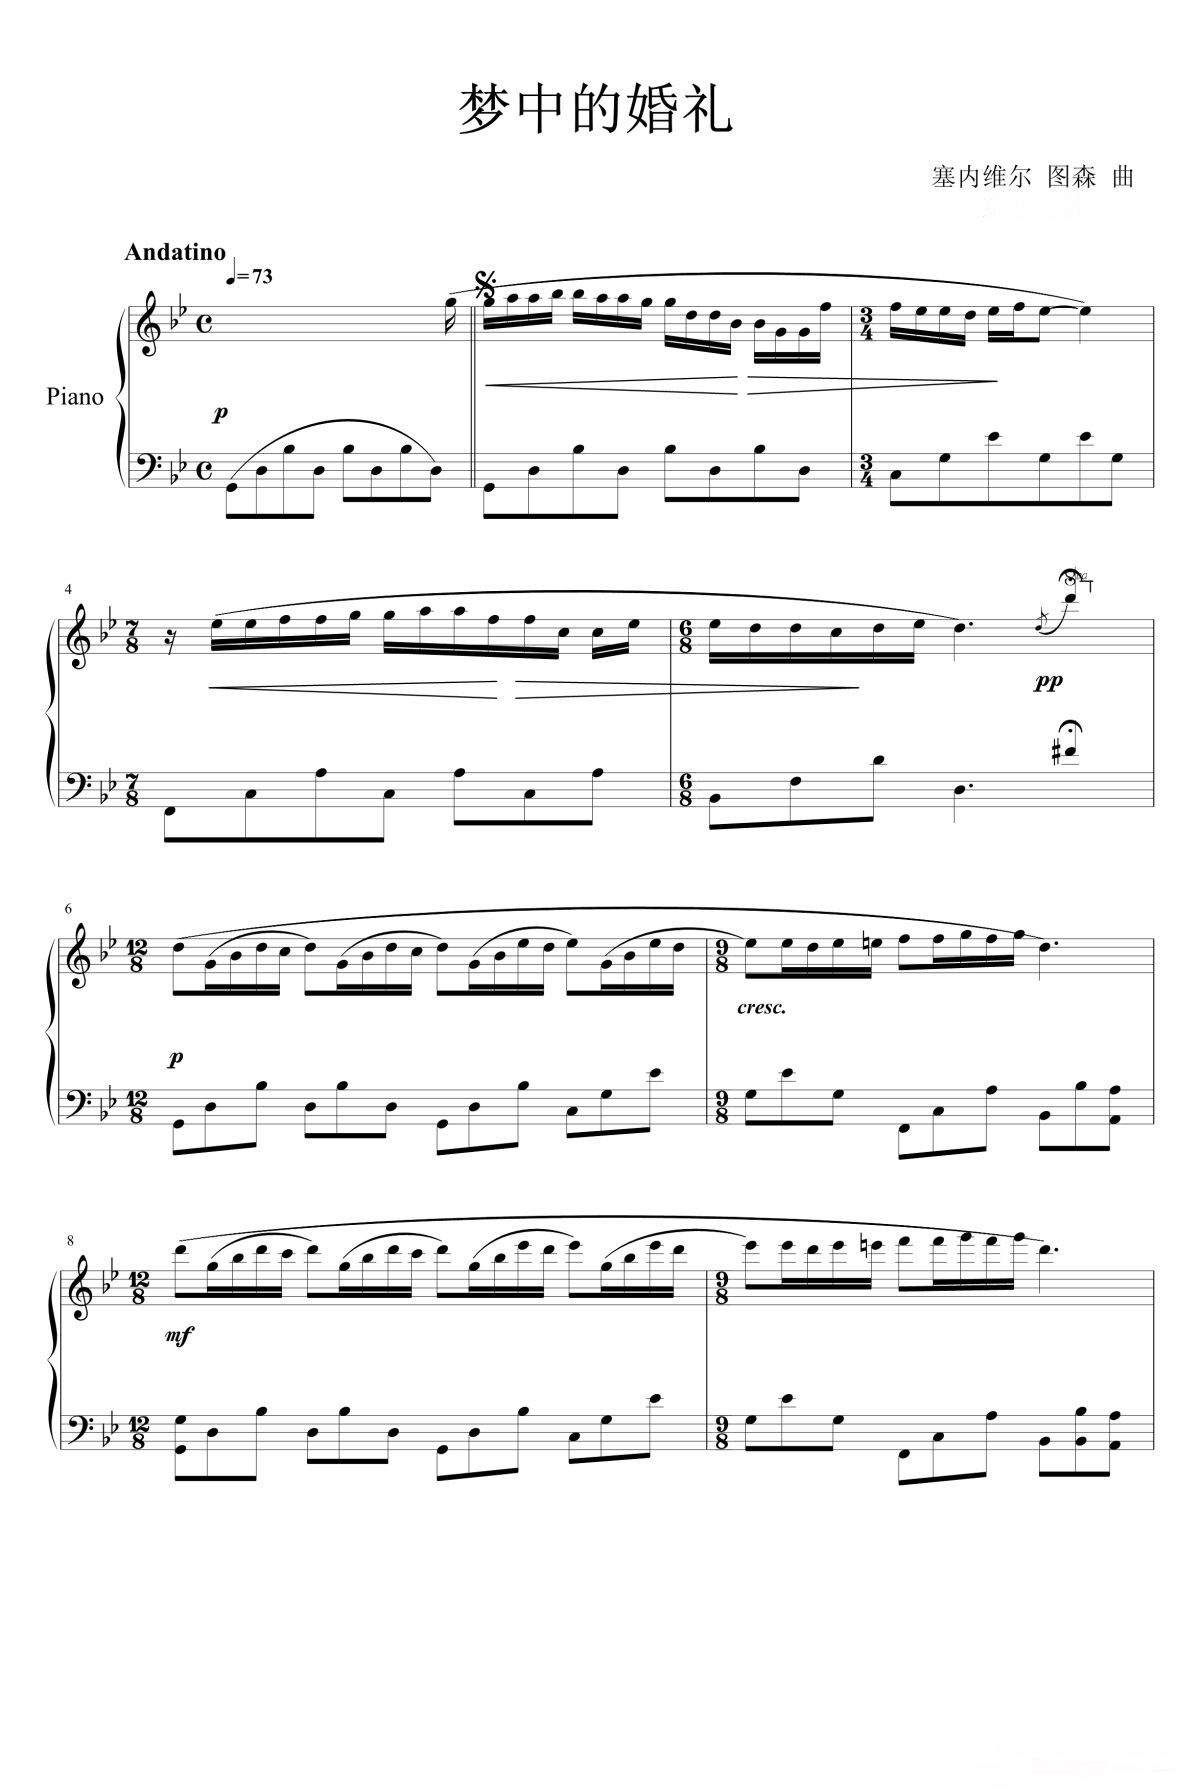 《梦中婚礼》的钢琴谱钢琴曲谱 - Richard Clayderman